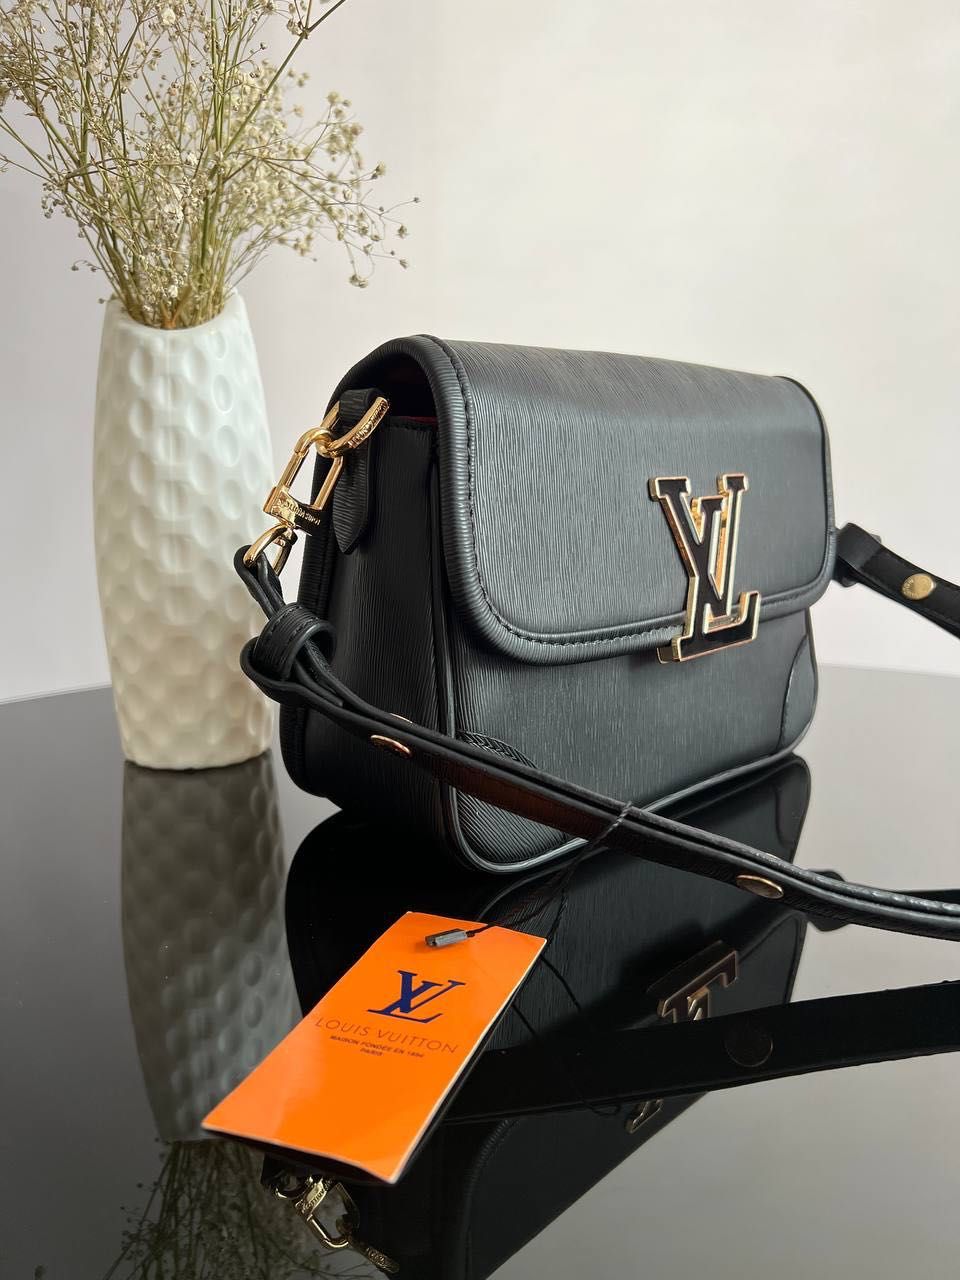 Нова сумка в продажі від Louis Vuitton